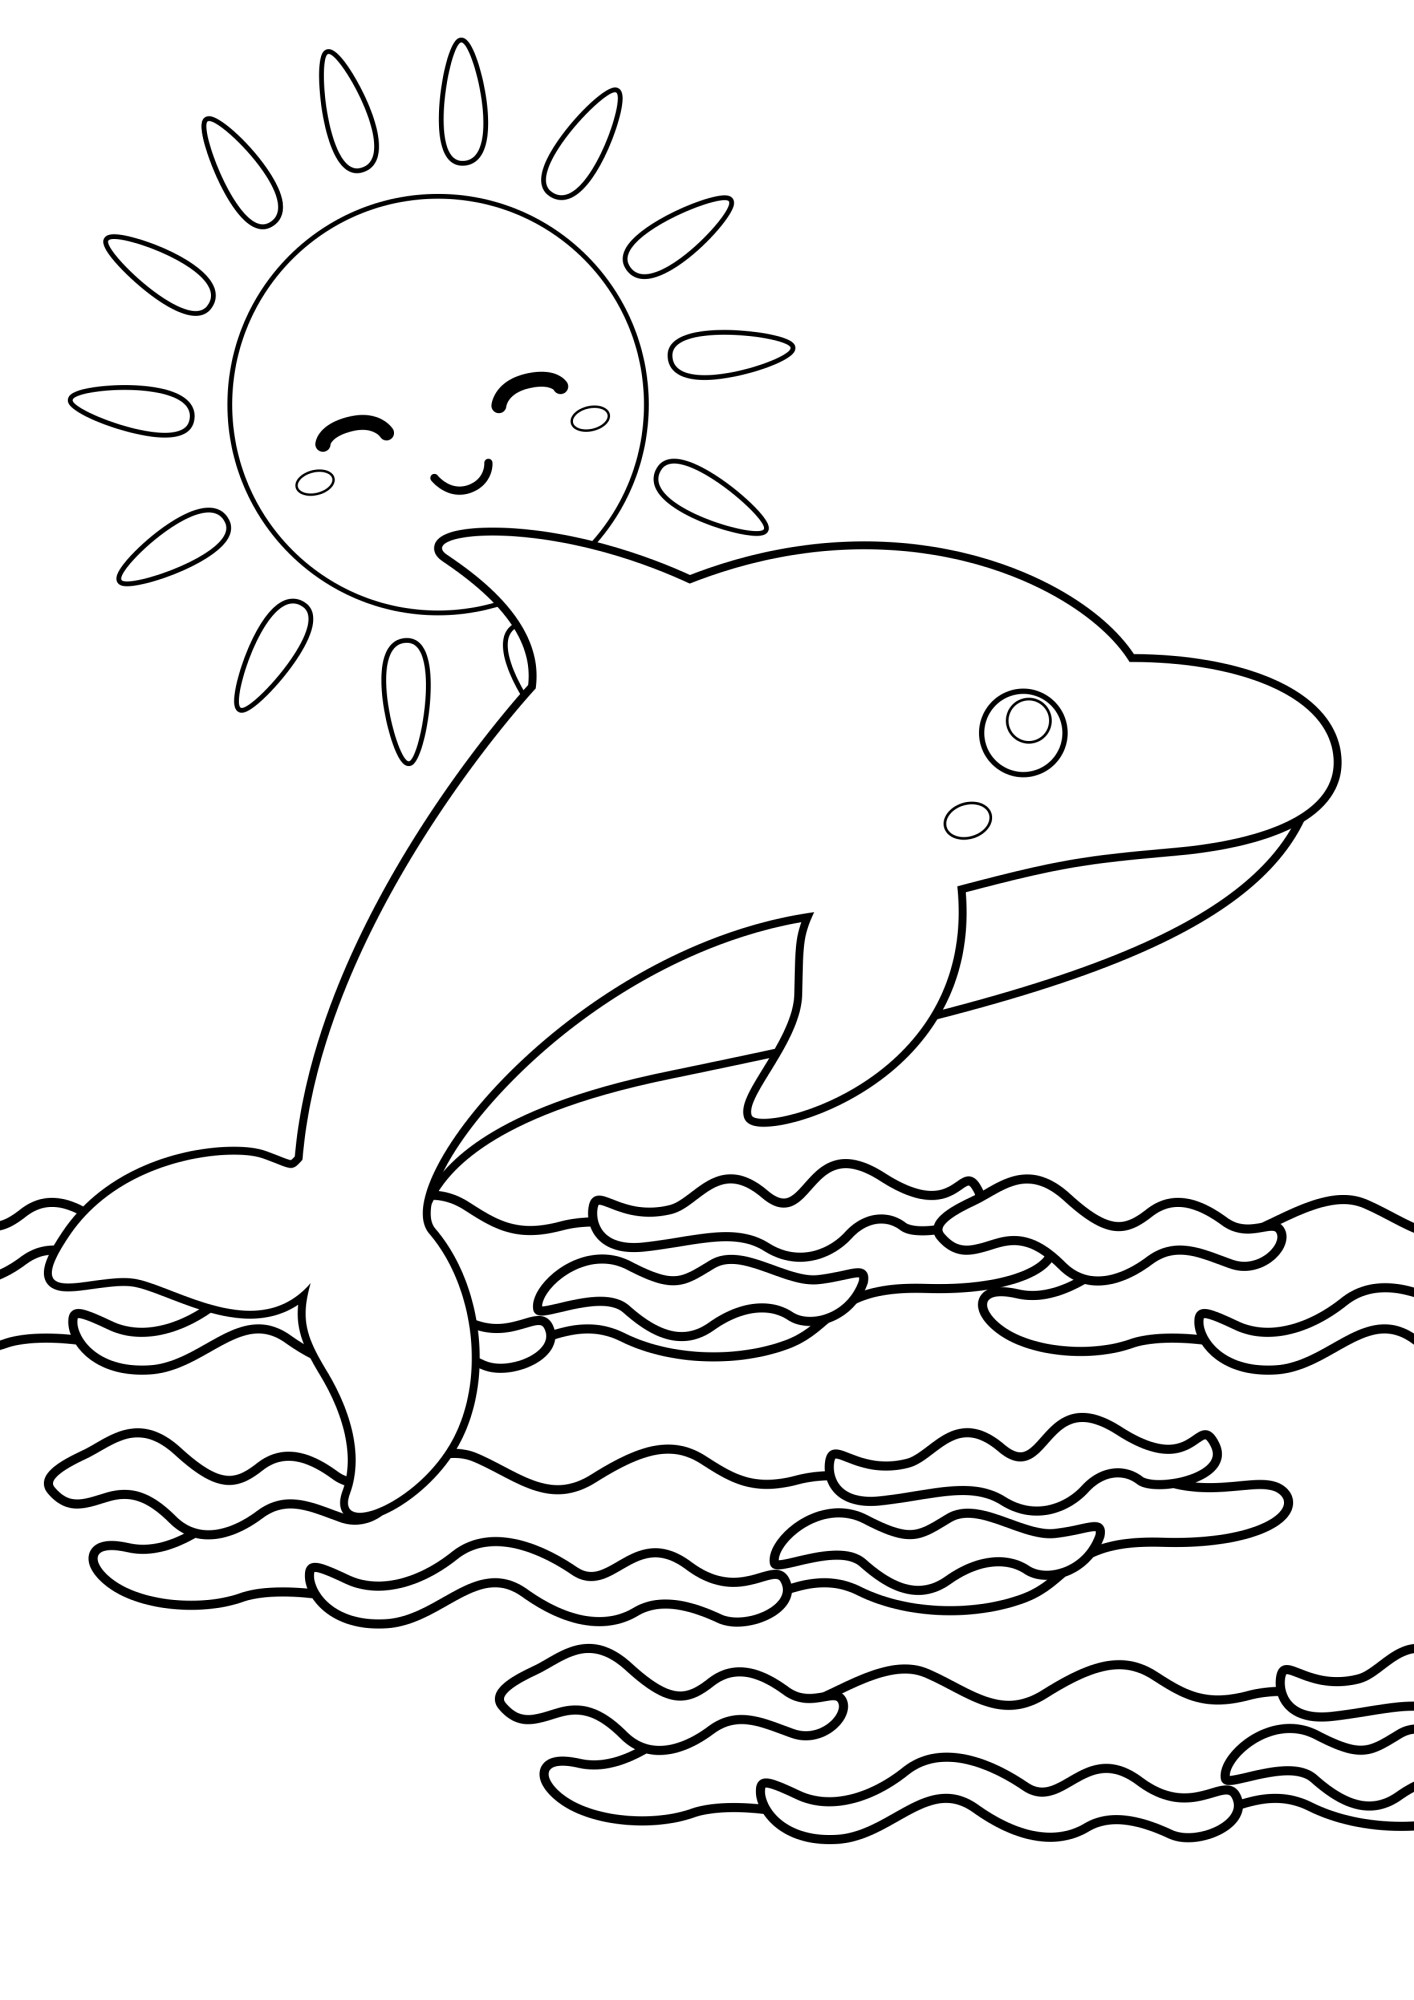 Раскраска для детей: дельфин и солнце над водой